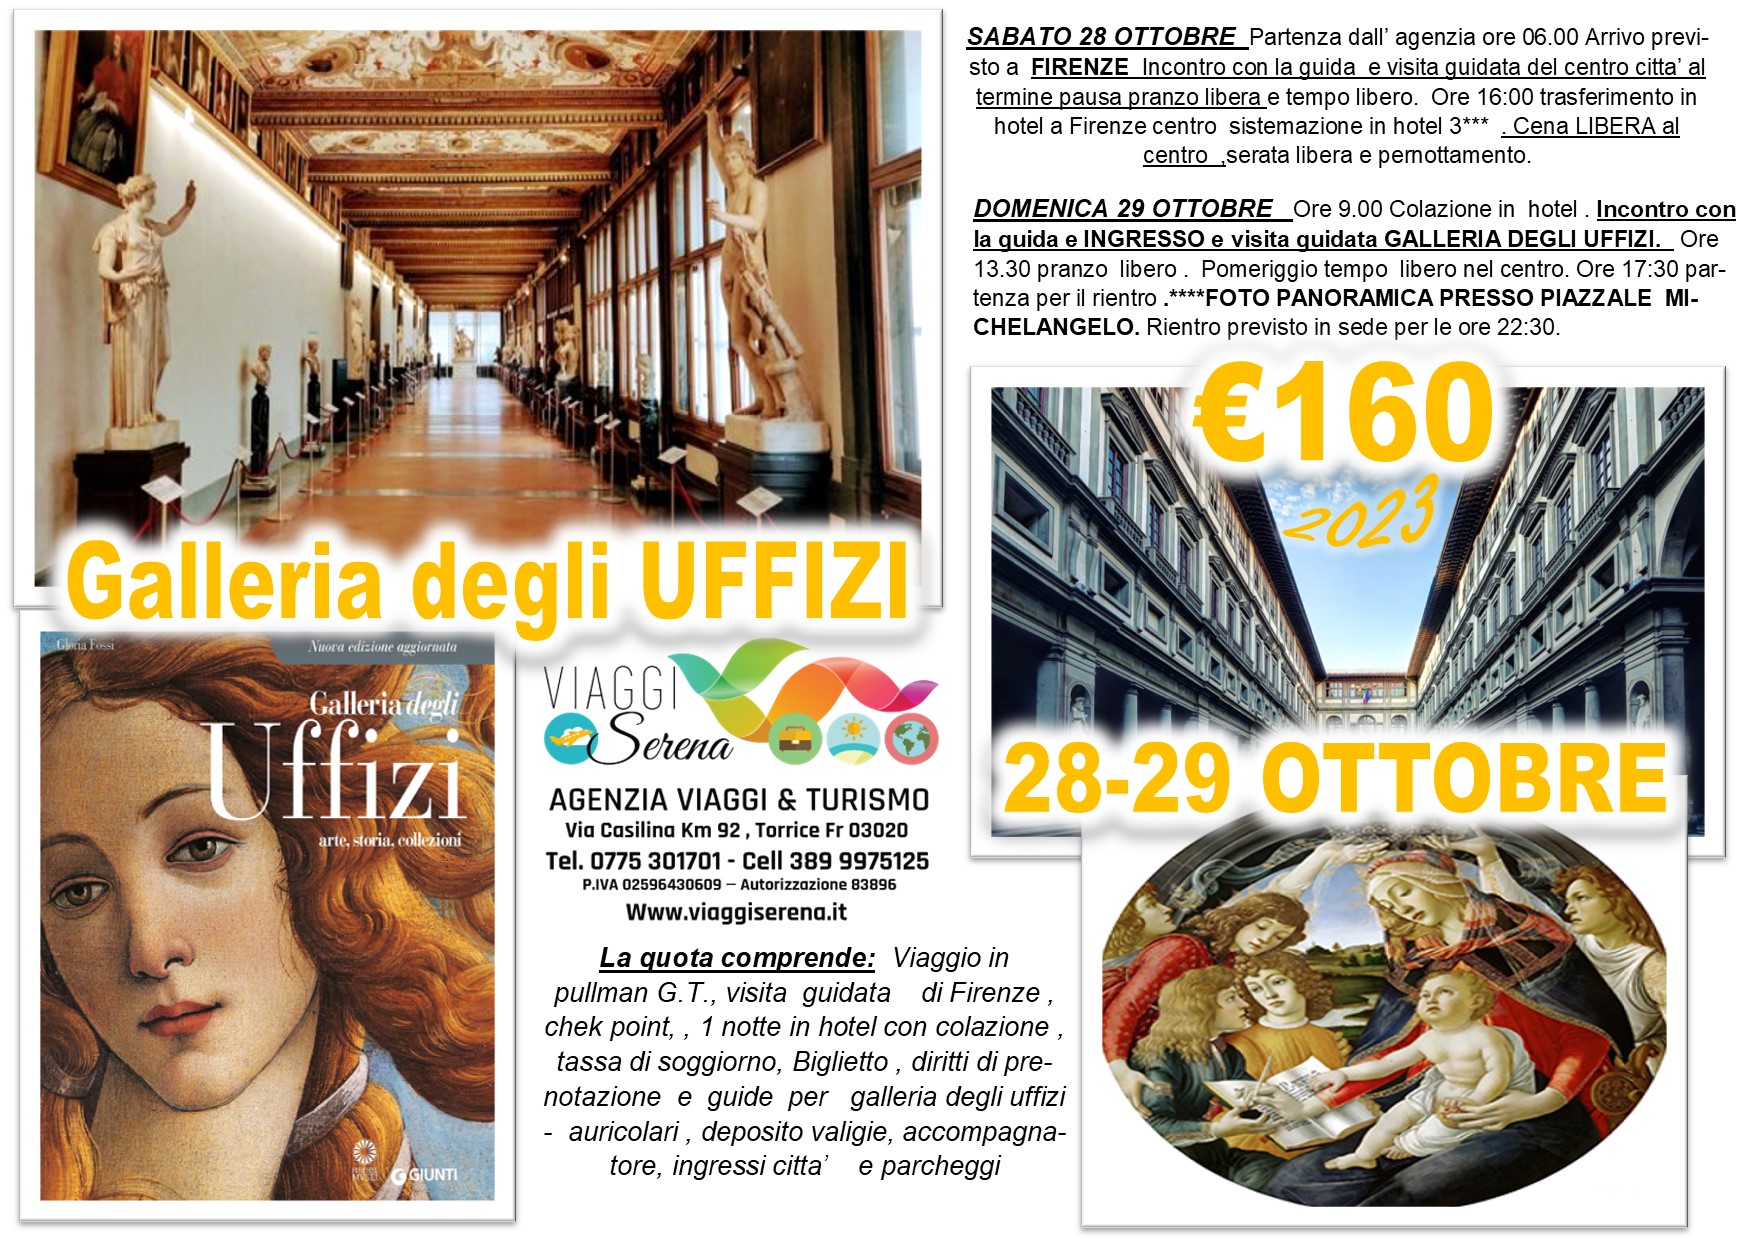 Viaggi di gruppo: Firenze “Galleria degli UFFIZI” 28-29 Ottobre € 160,00